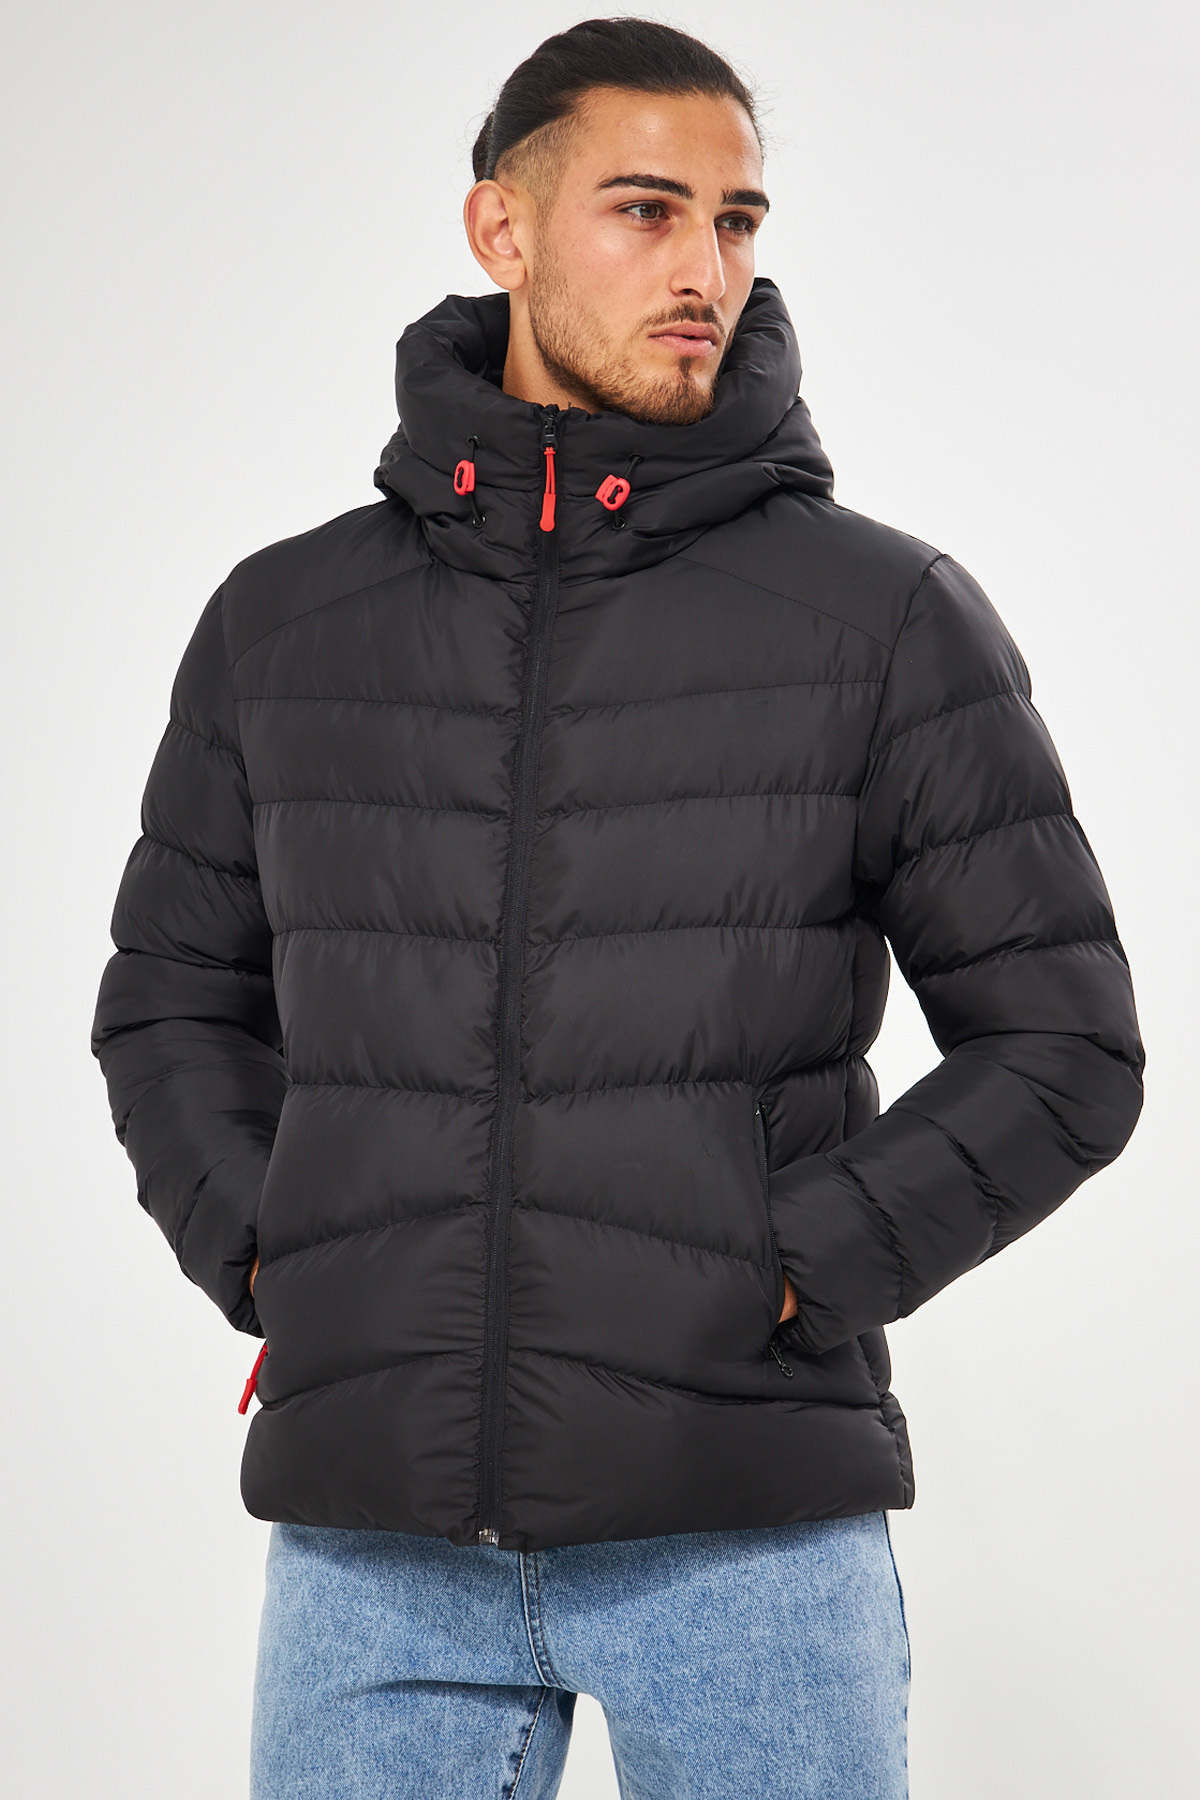 D1fference Pánsky čierny vodný a vetruodolný nafukovací zimný kabát s kapucňou.